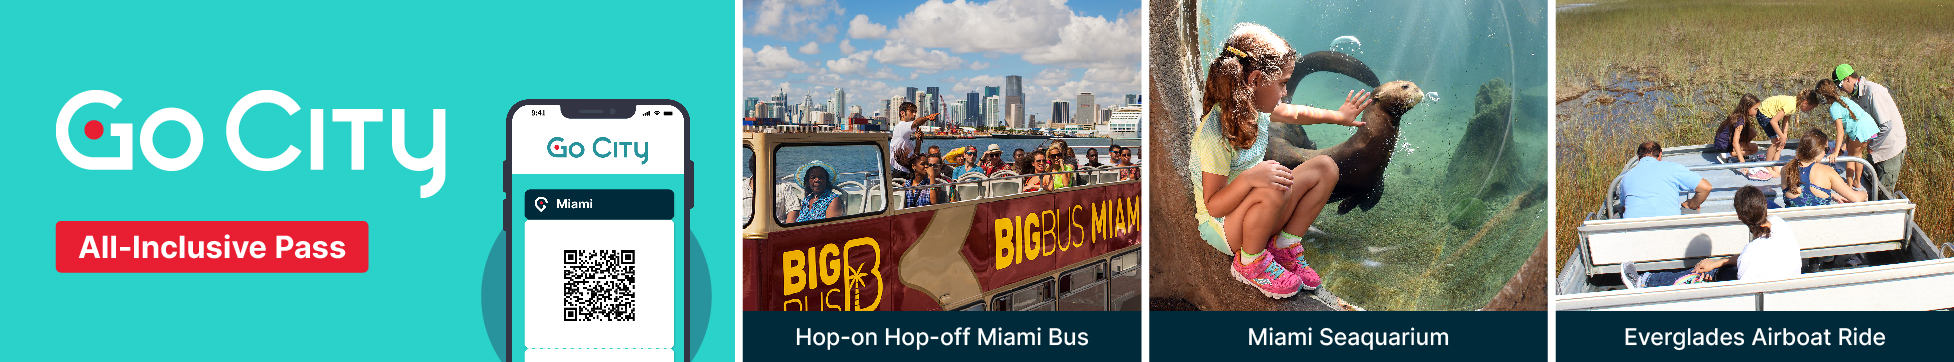 Go City | Miami All-Inclusive Pass Header Image